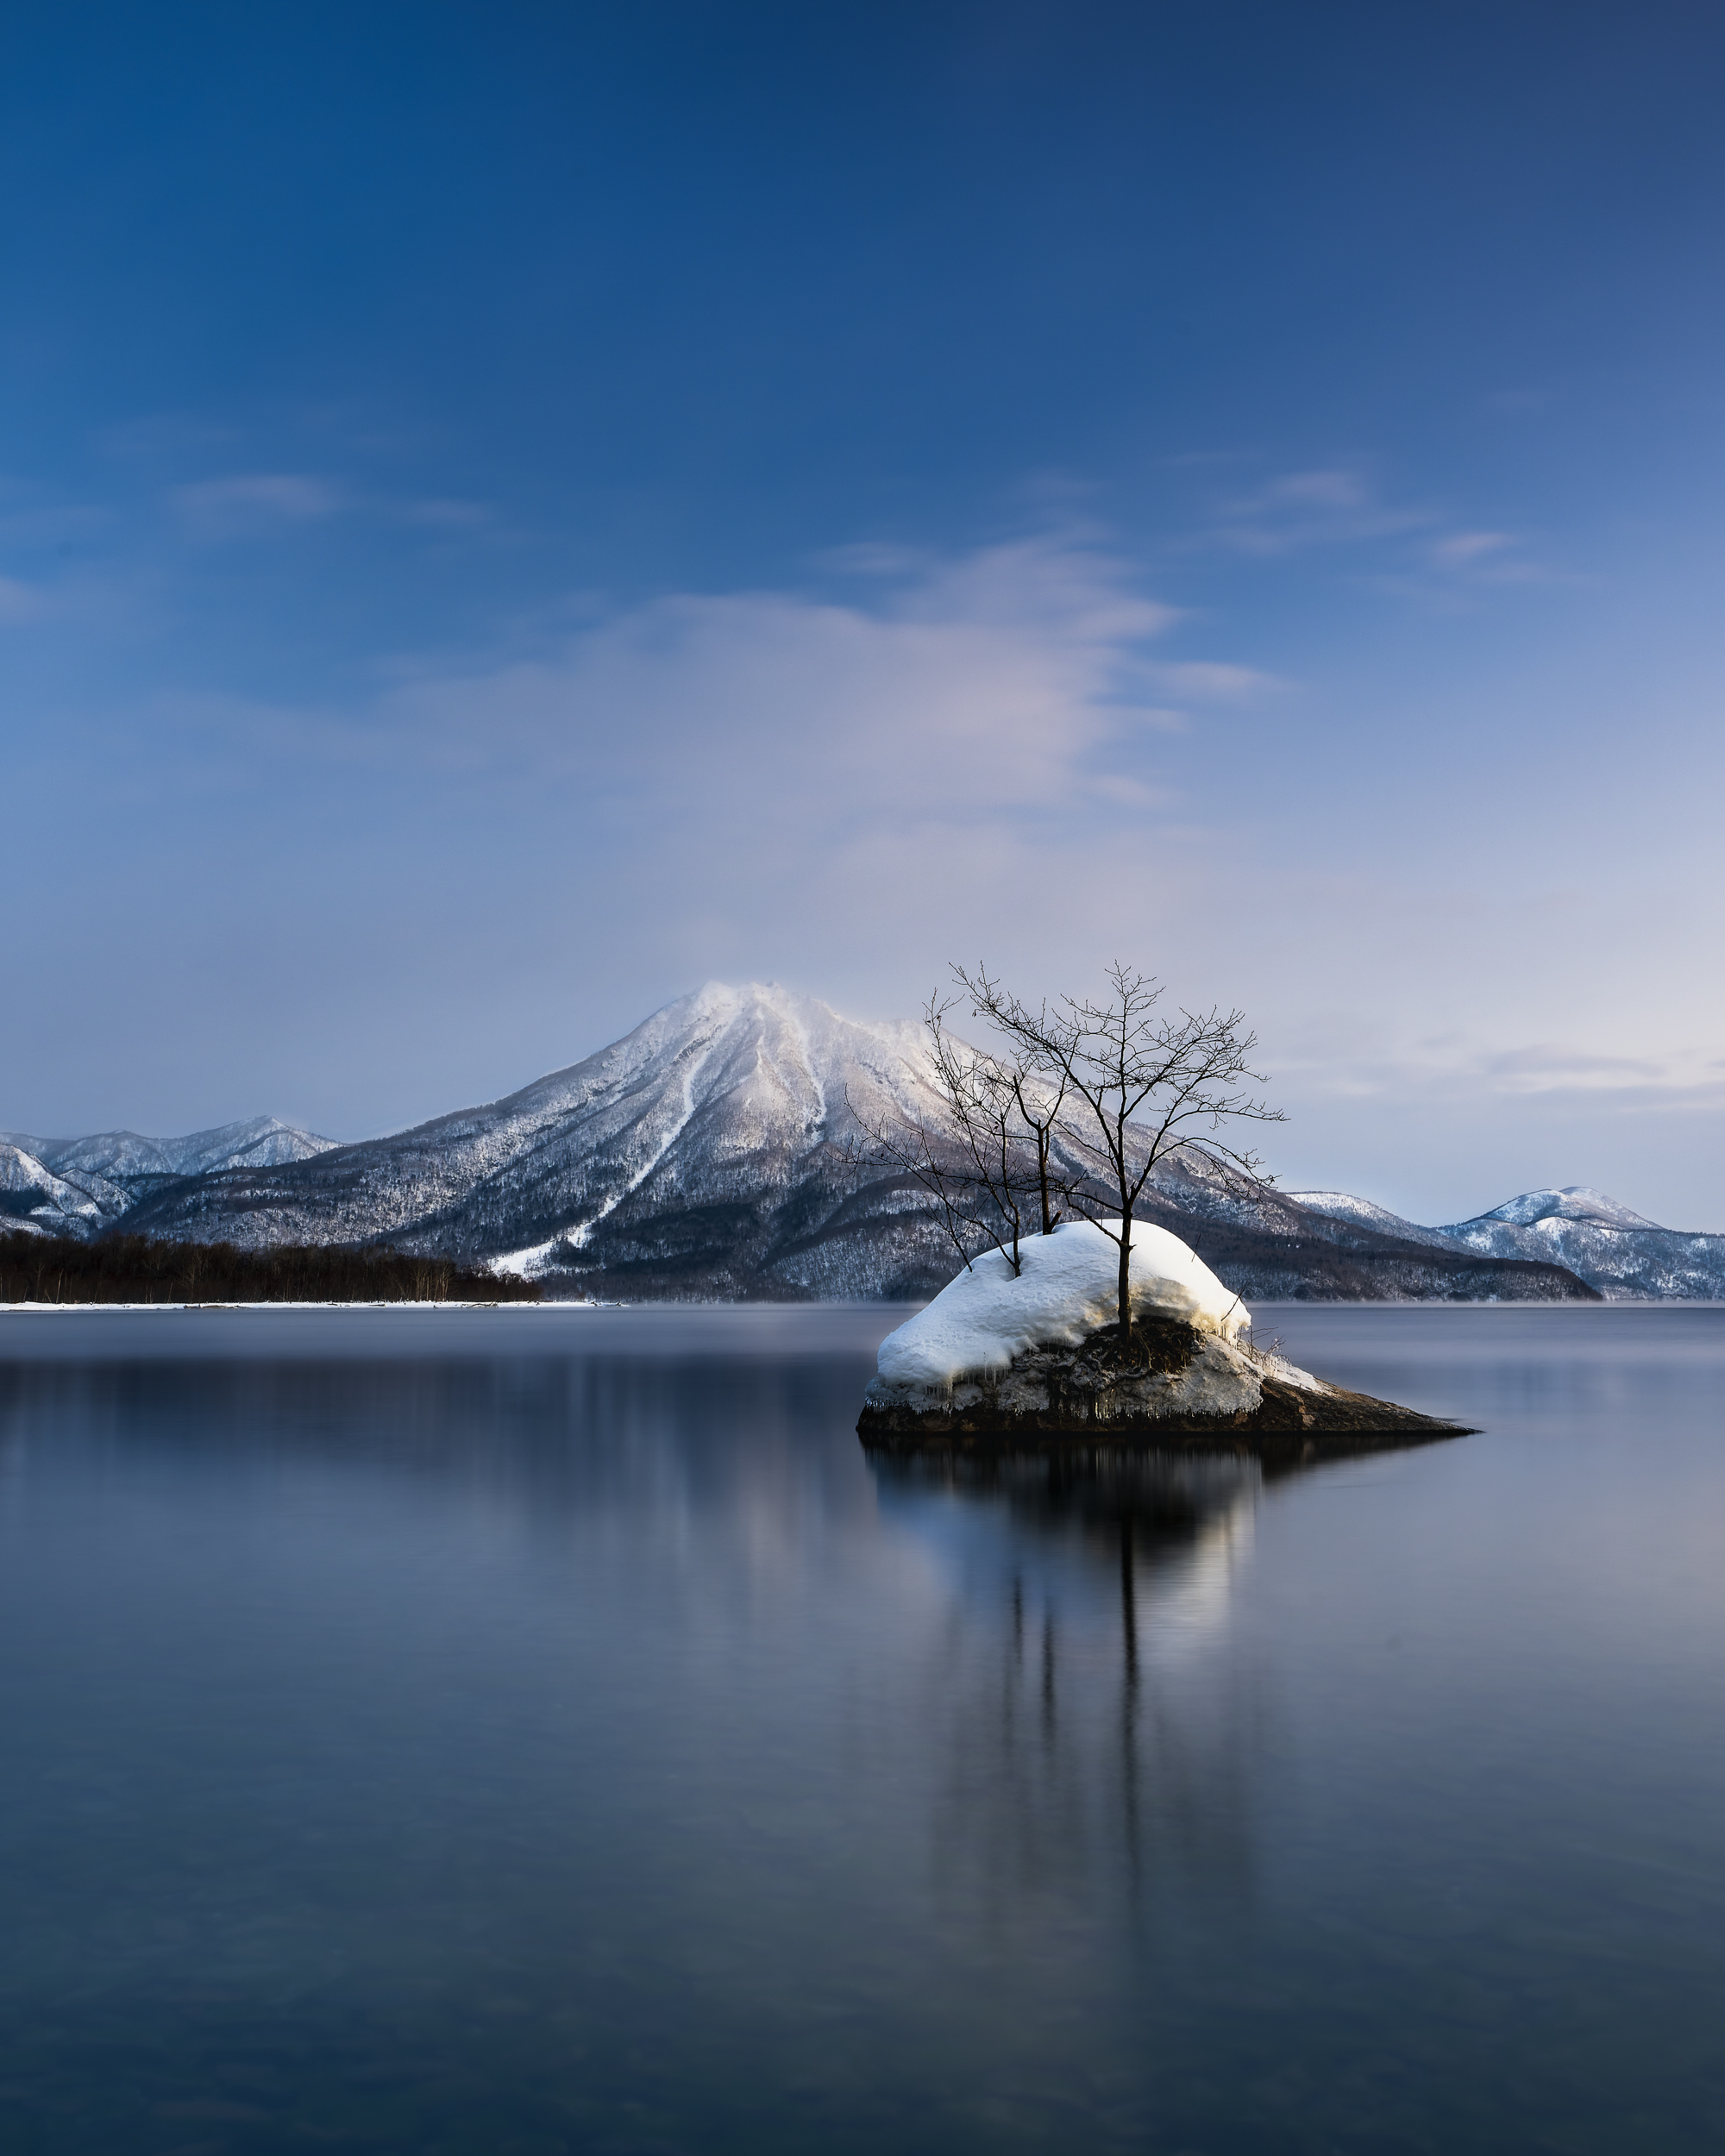 北海道を拠点に雄大な自然風景や可愛らしい野生動物を撮影している写真家「阿部裕輔」の公式ホームページ。